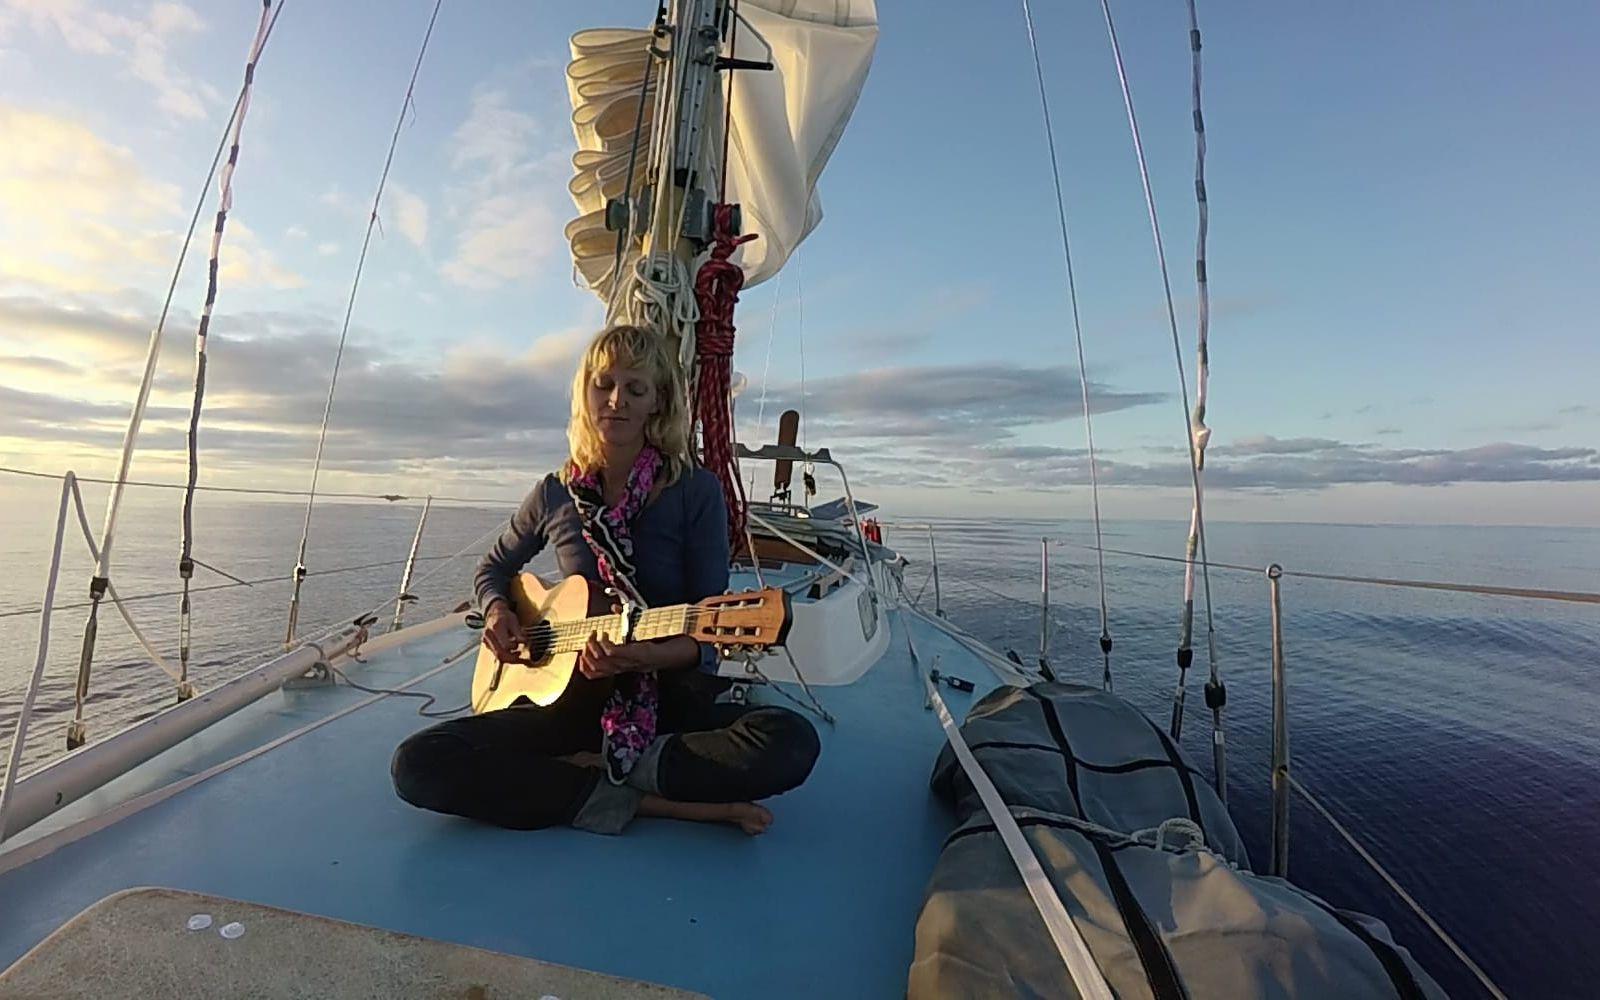 Som musiker spenderade hon mycket tid med att spela gitarr på resan. Bild: Emma Ringqvist